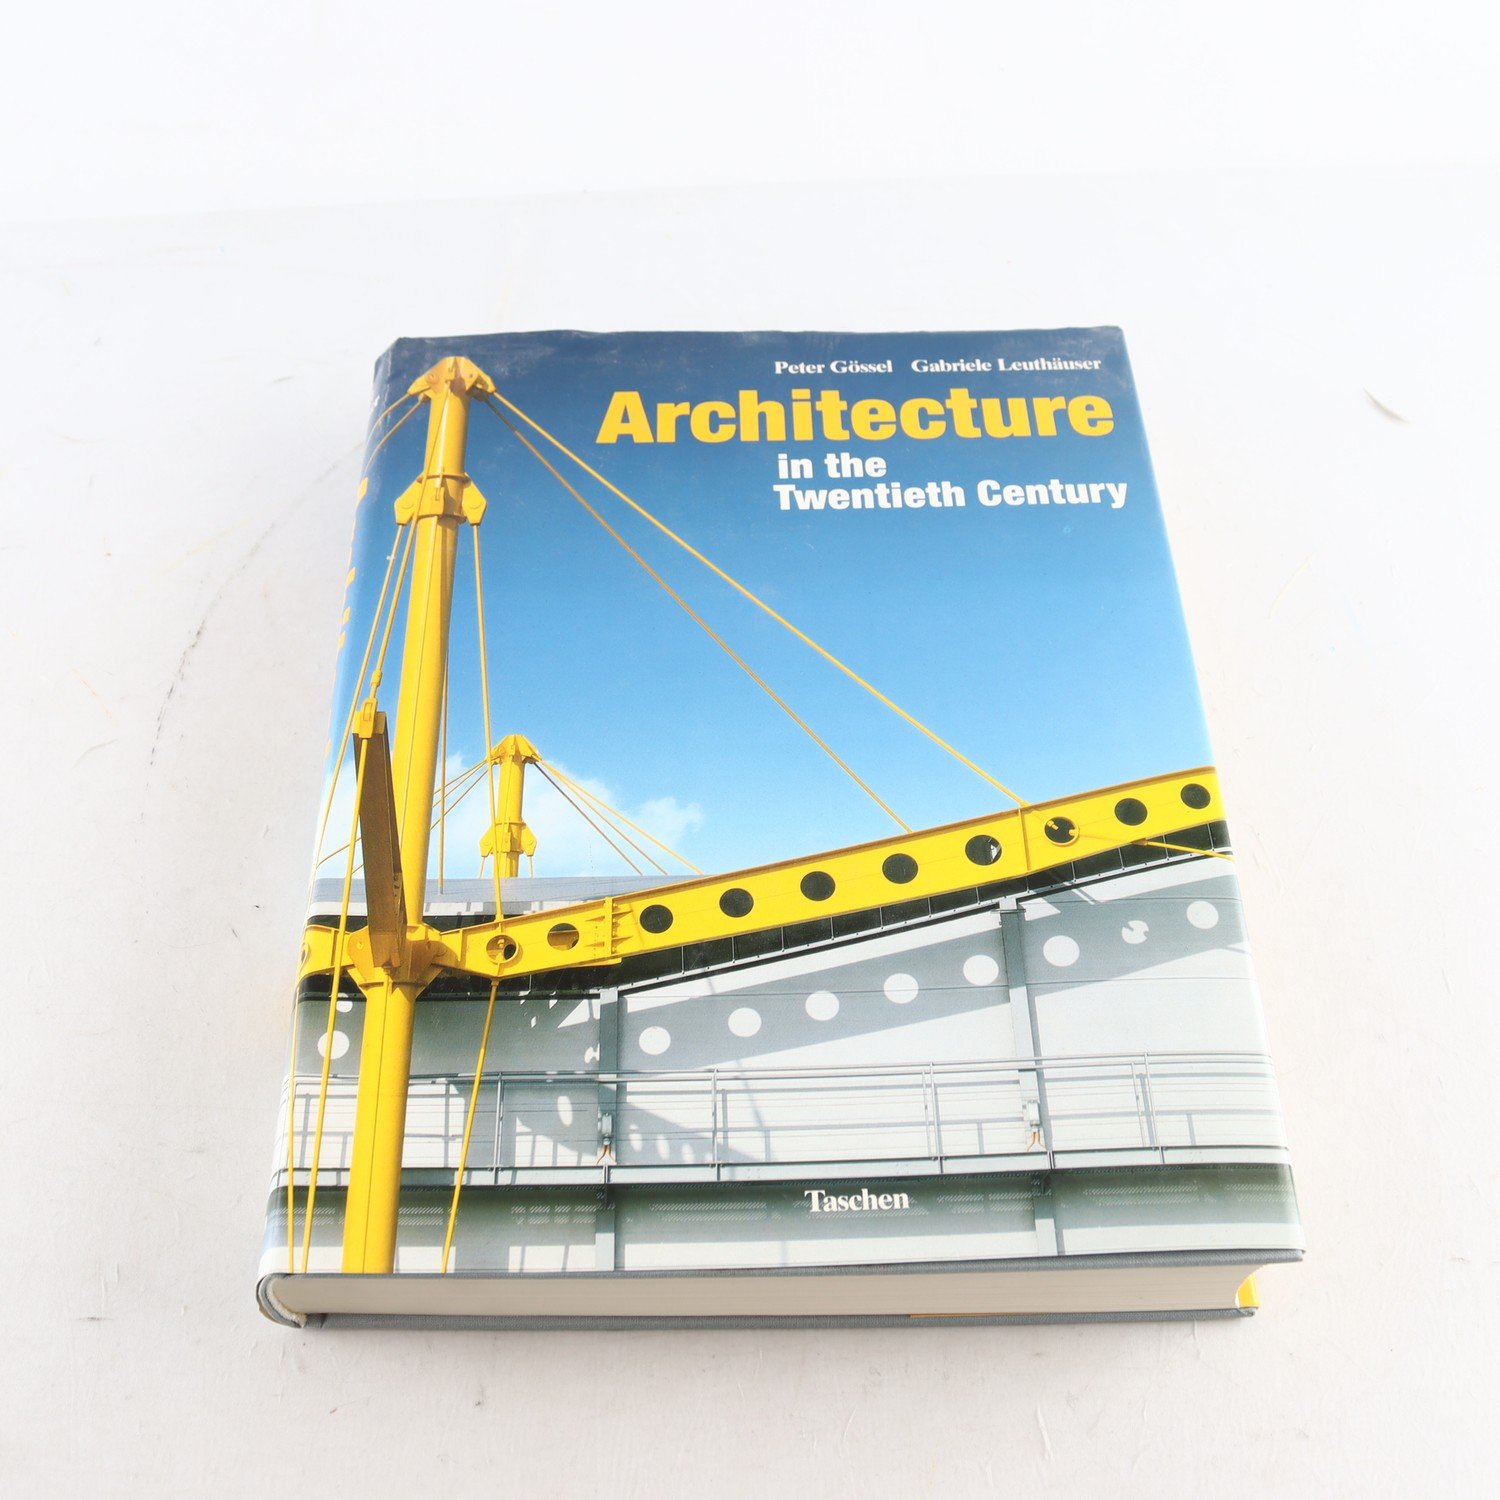 Architecture in the Twentieth Century, P. Gössel & G. Leuthäuser